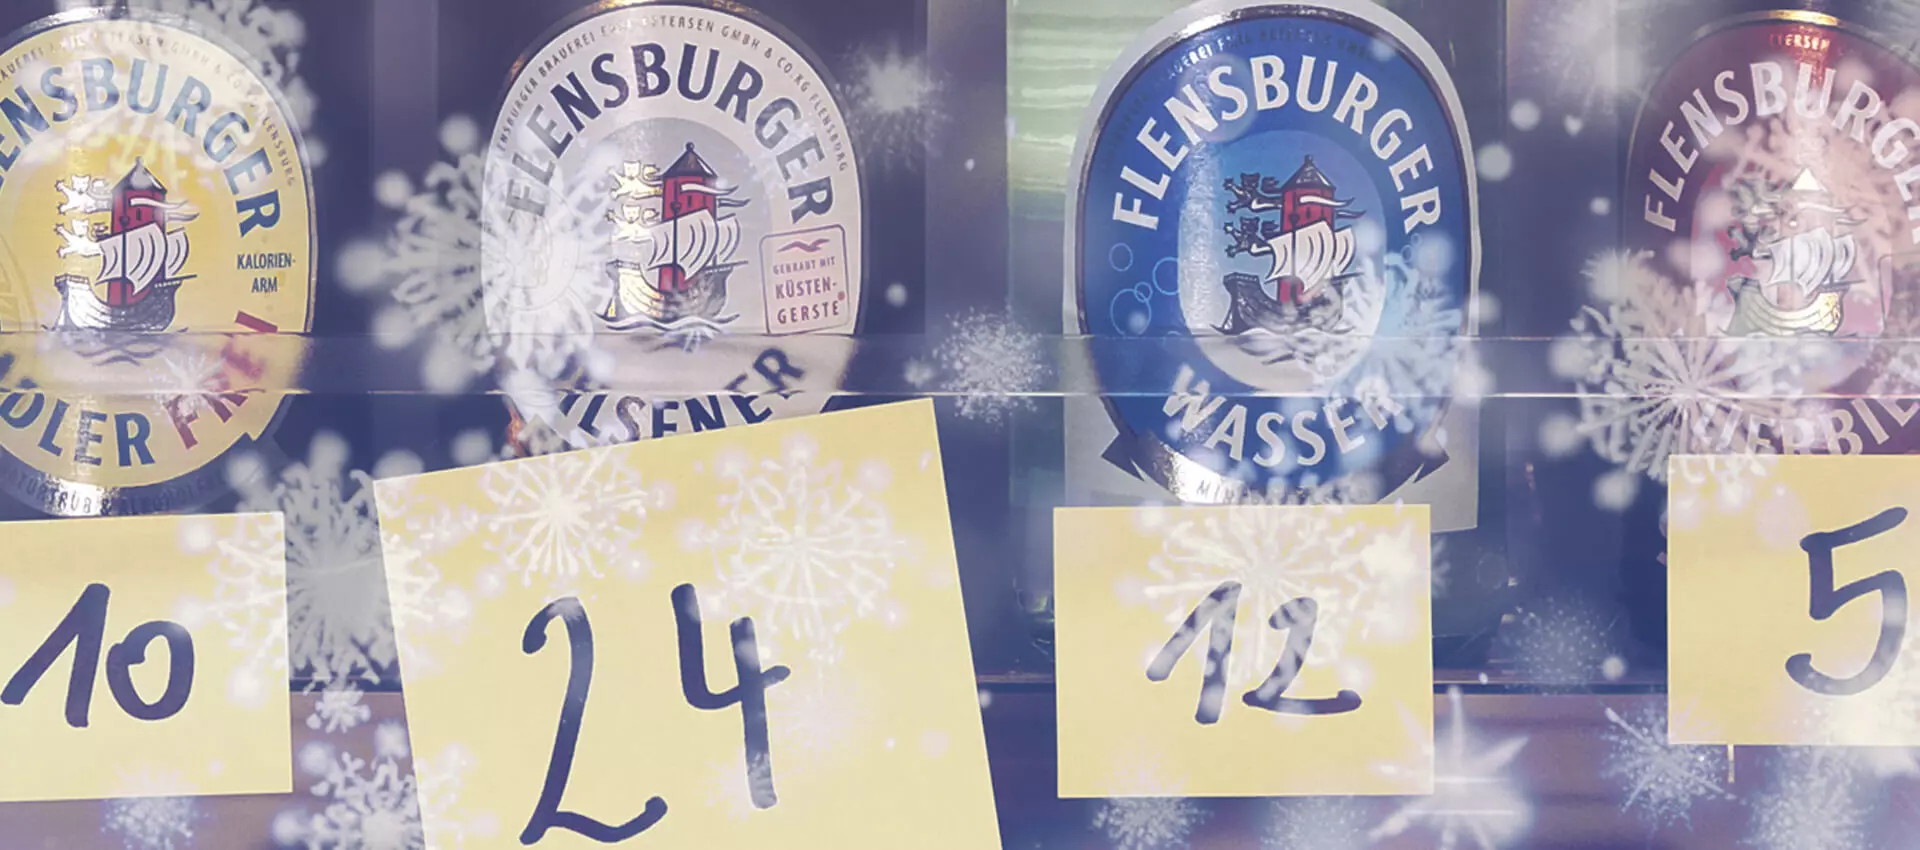 4 Flensburger Bierflaschen mit Zetteln versehen, auf denen Nummern stehen; ein Schneeflockenfilter in Weiß davor.